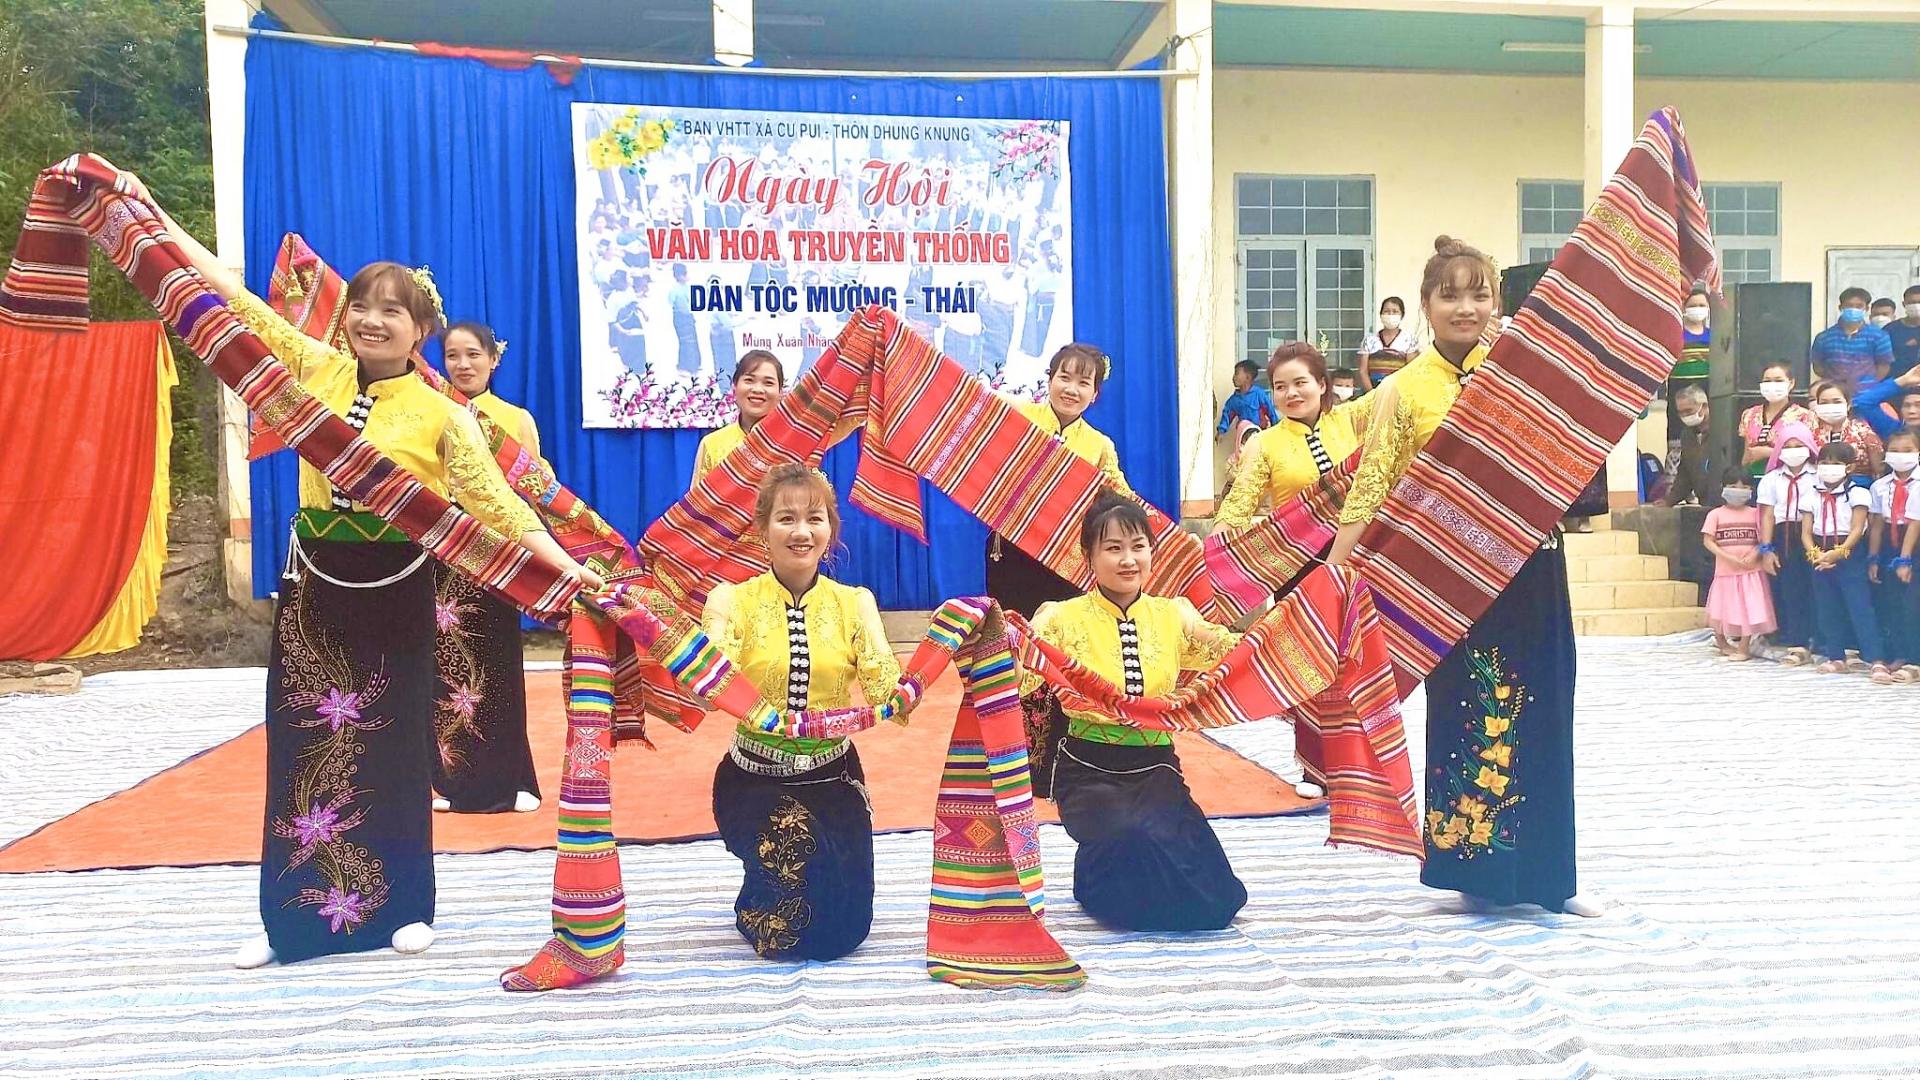 Gìn giữ văn hóa dân tộc Mường, Thái trên quê hương mới